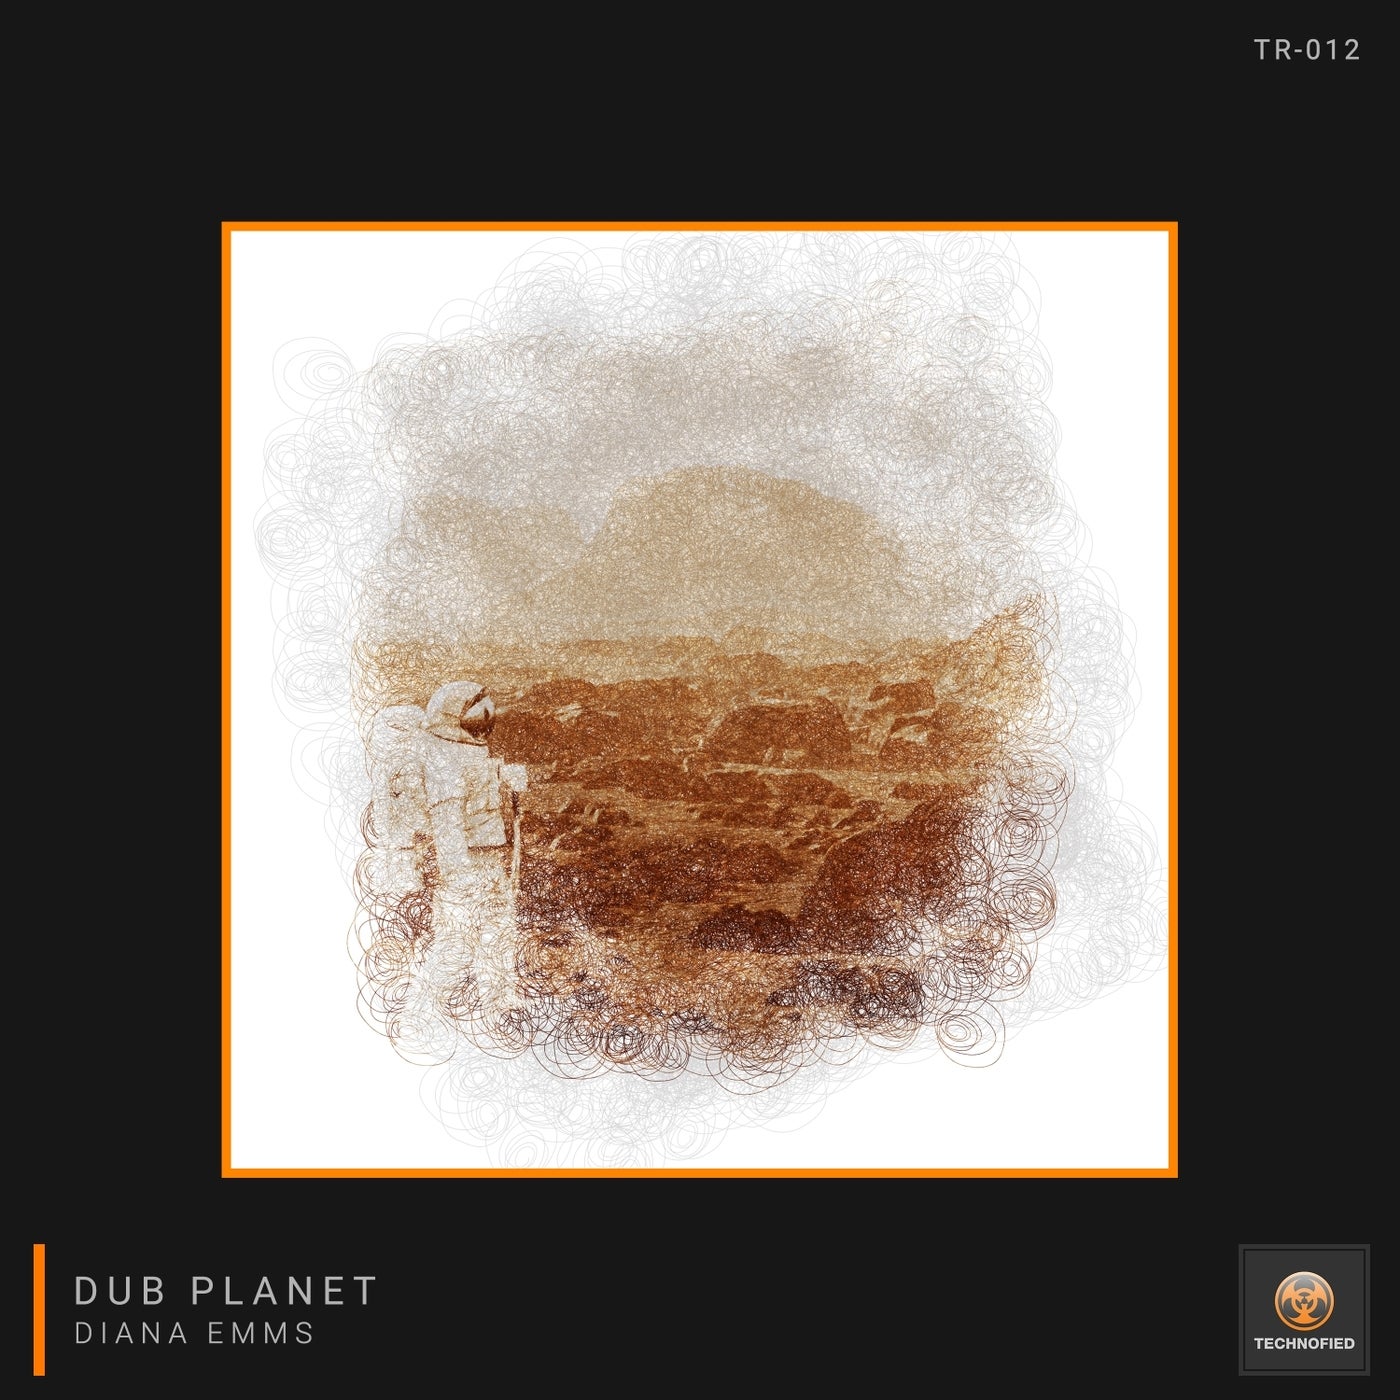 Dub Planet